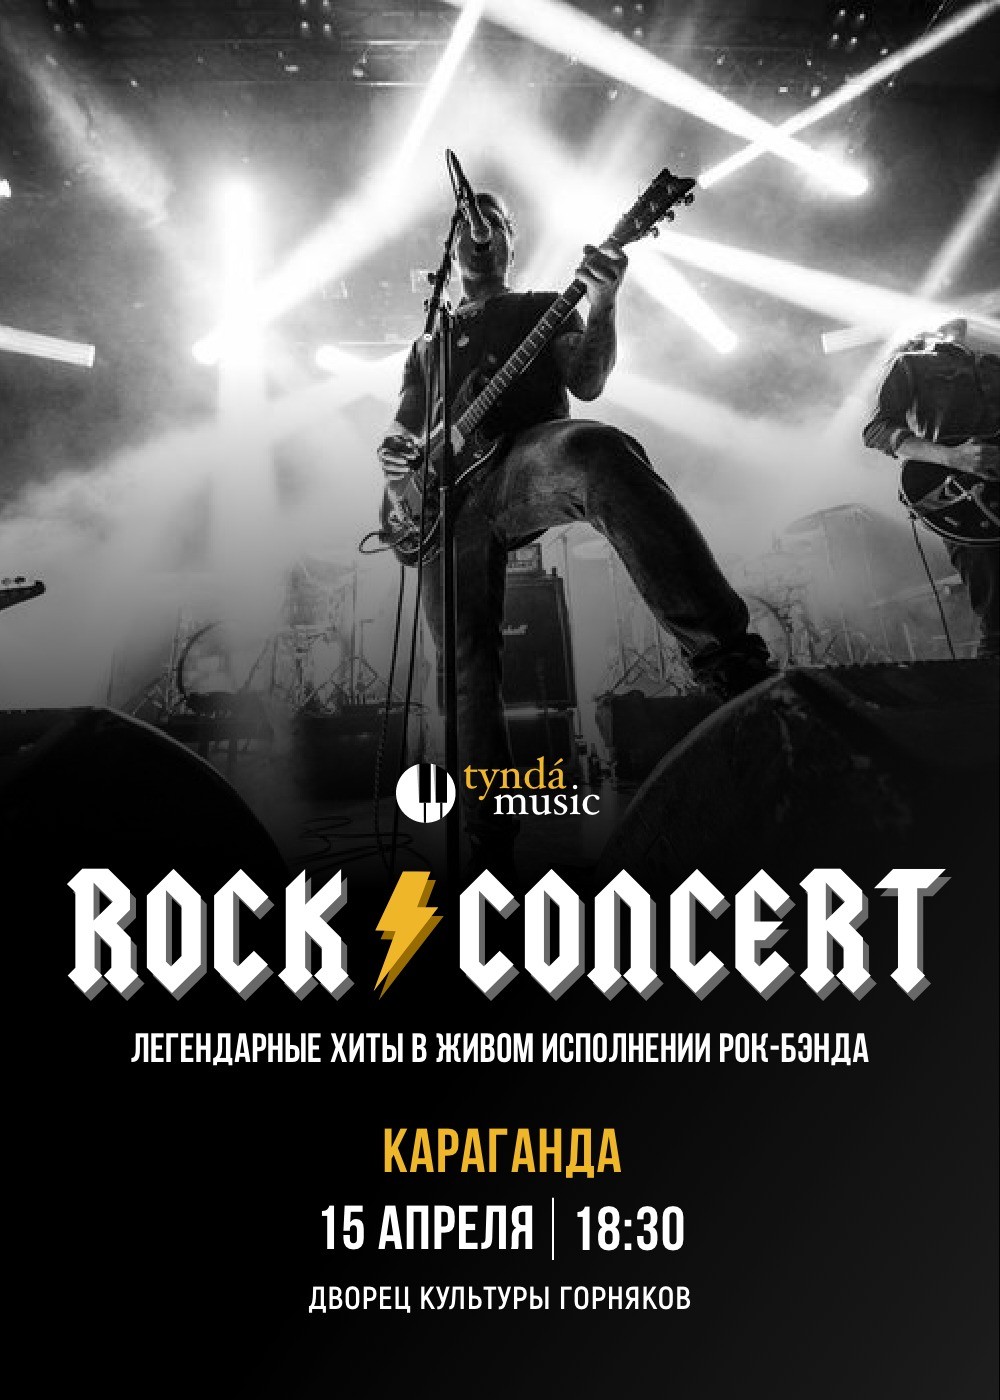 Rock concert в Караганде